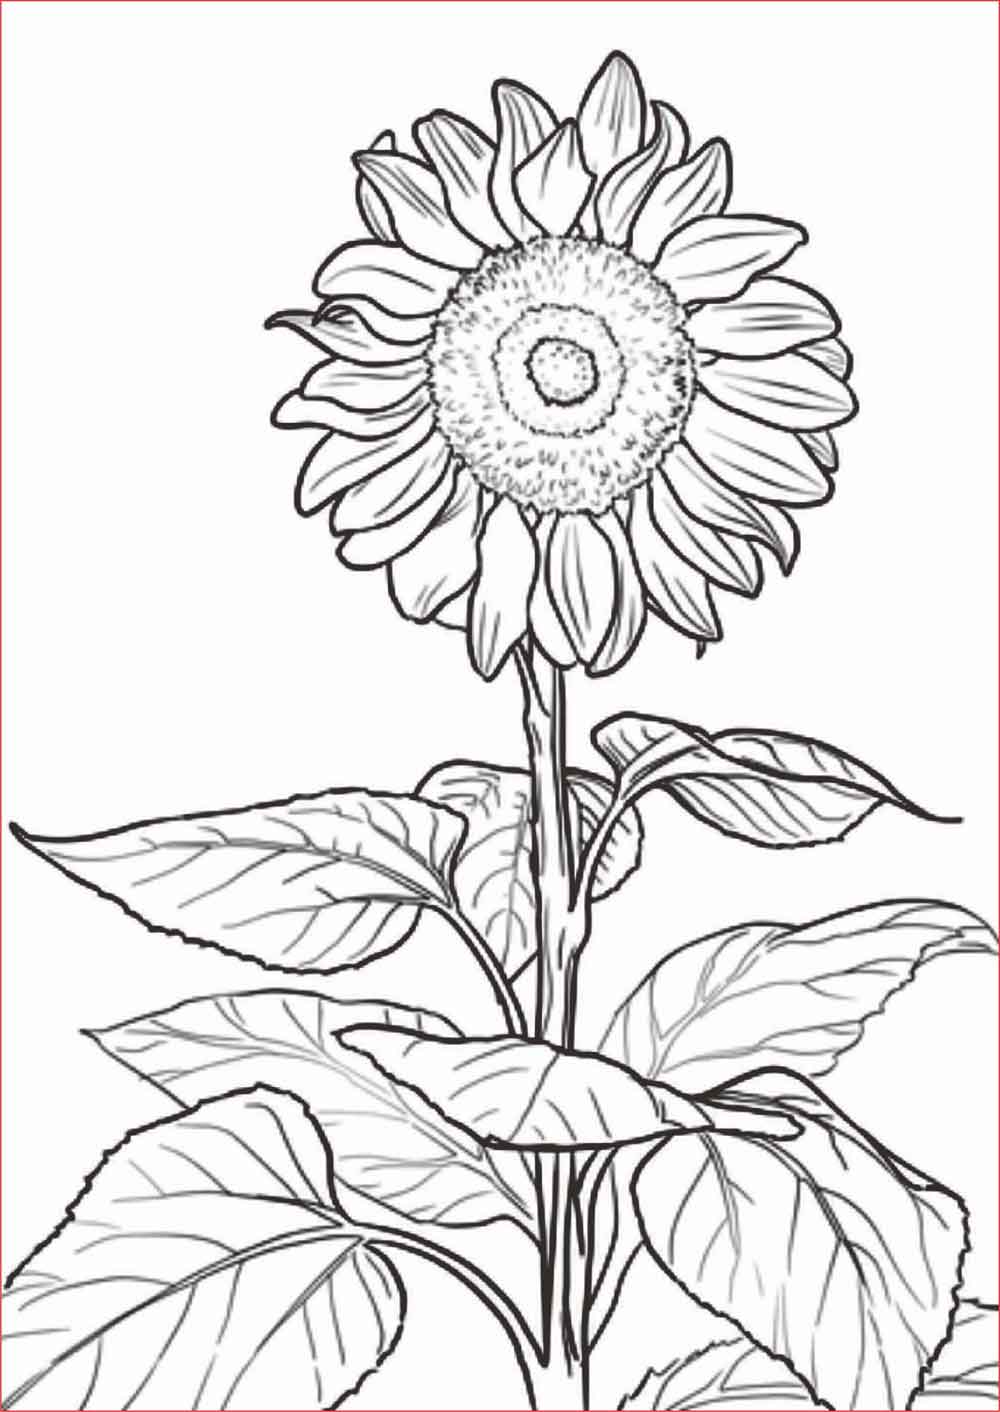 Gambar Bunga Yang Mudah Di Gambar - Bunga Sketsa Matahari Mawar Anak ...